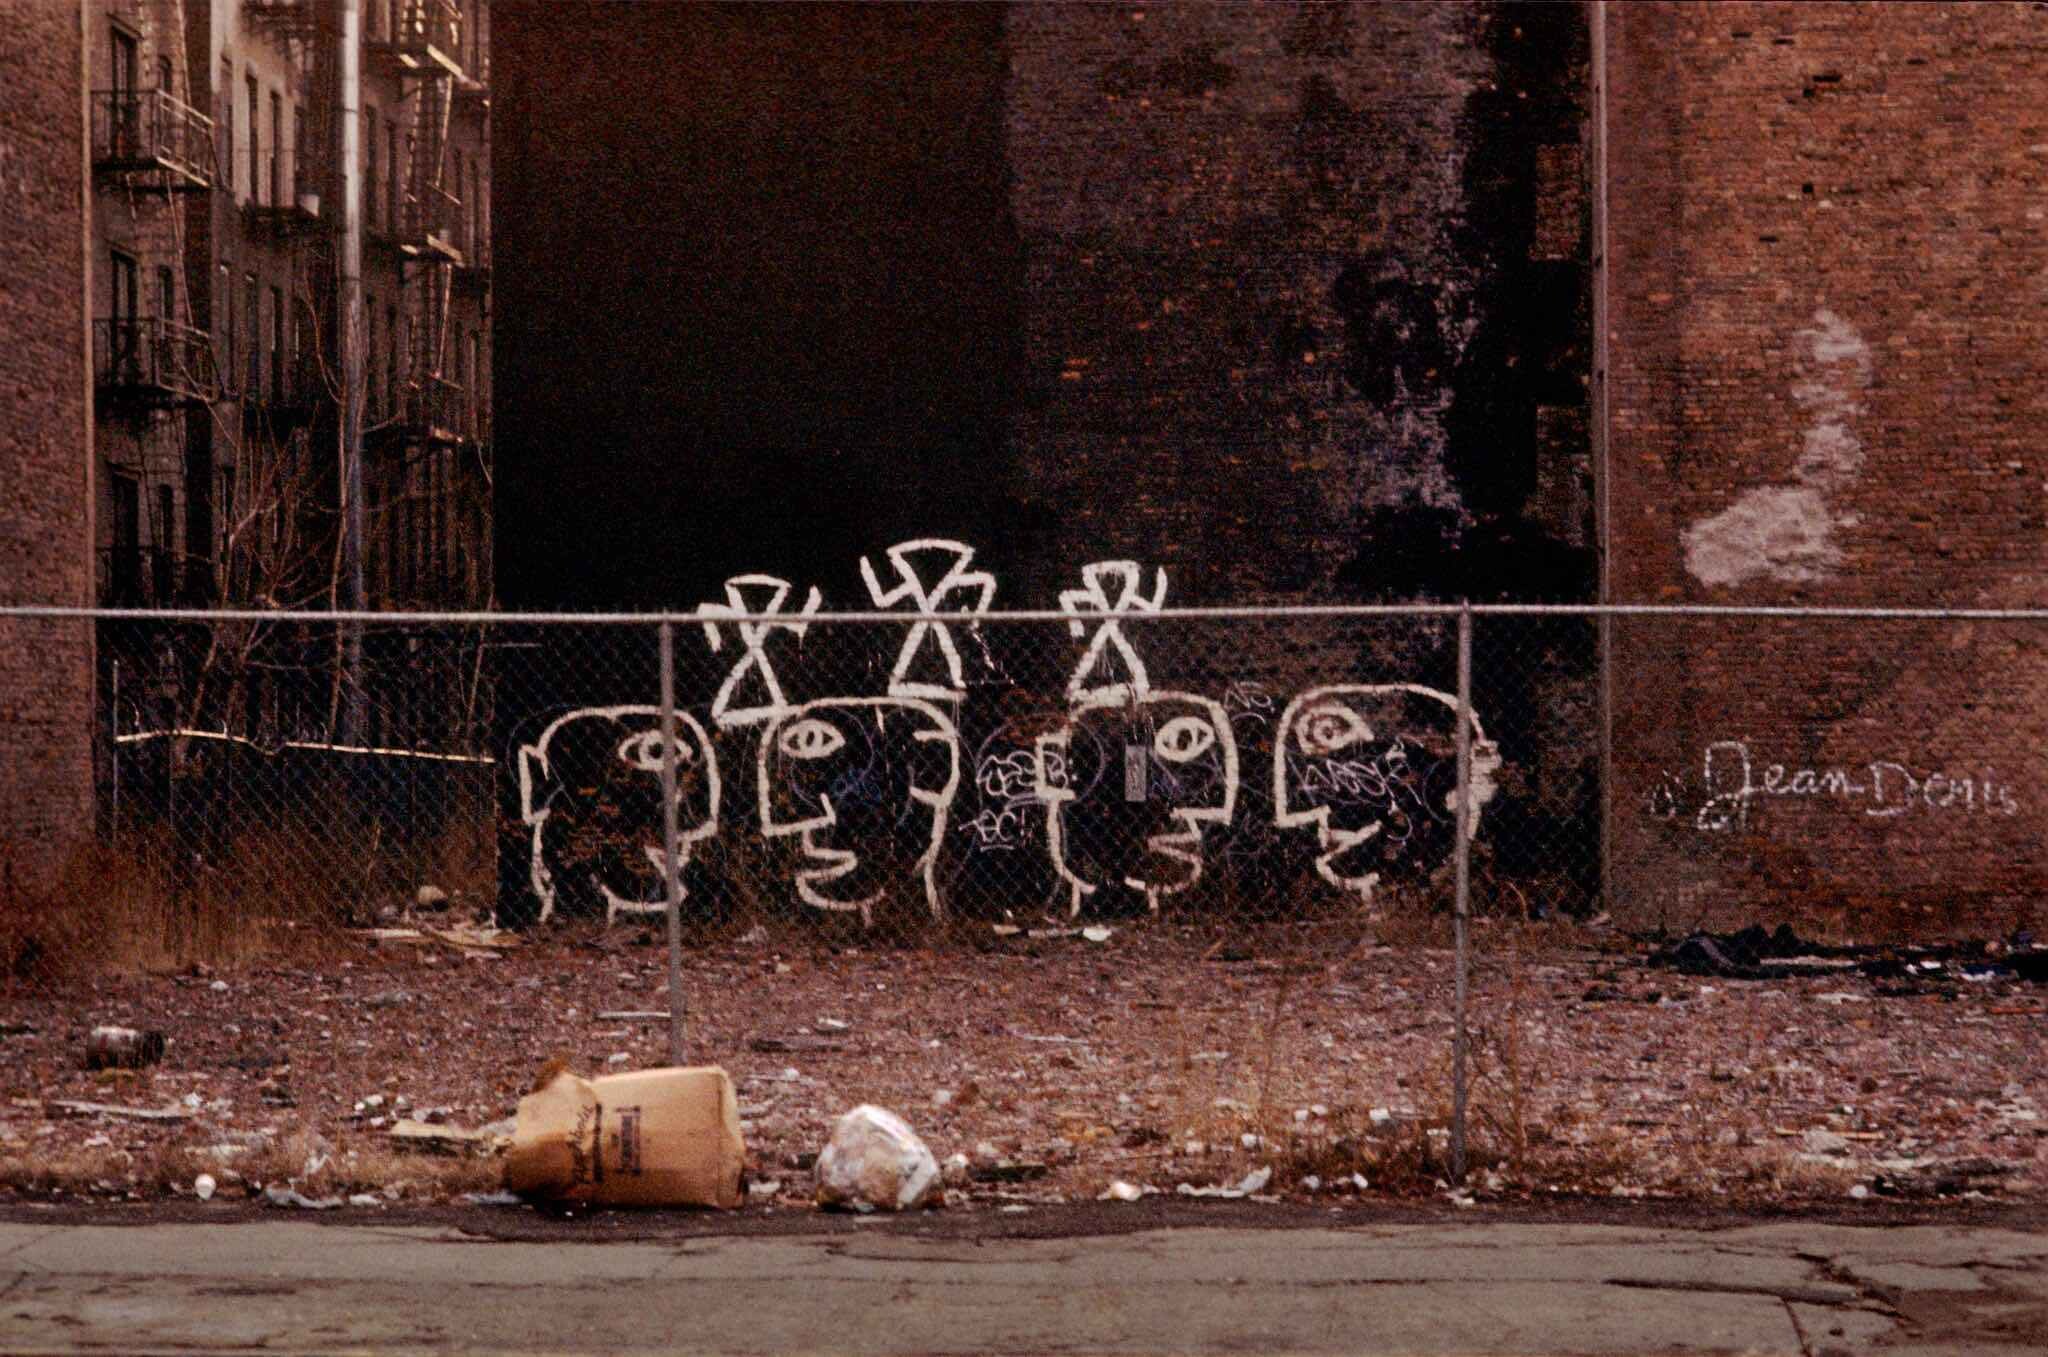 1986 год, Нью-Йорк, пустырь и граффити. Фотограф Франк Хорват